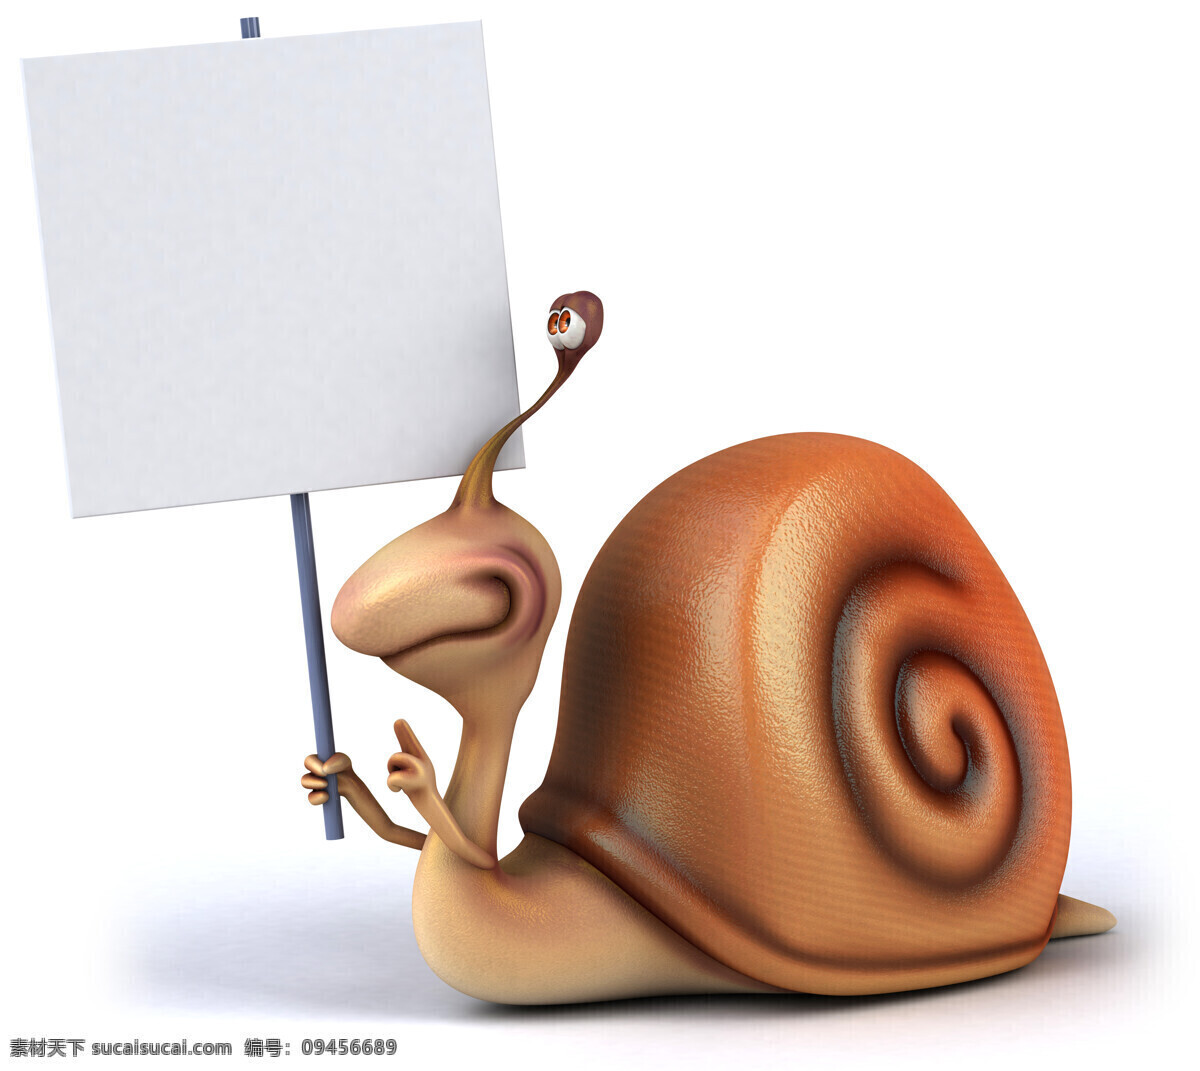 3d设计 白板 动物 卡通蜗牛 空白广告牌 蜗牛 展示牌 3d 设计素材 模板下载 3d蜗牛 矢量图